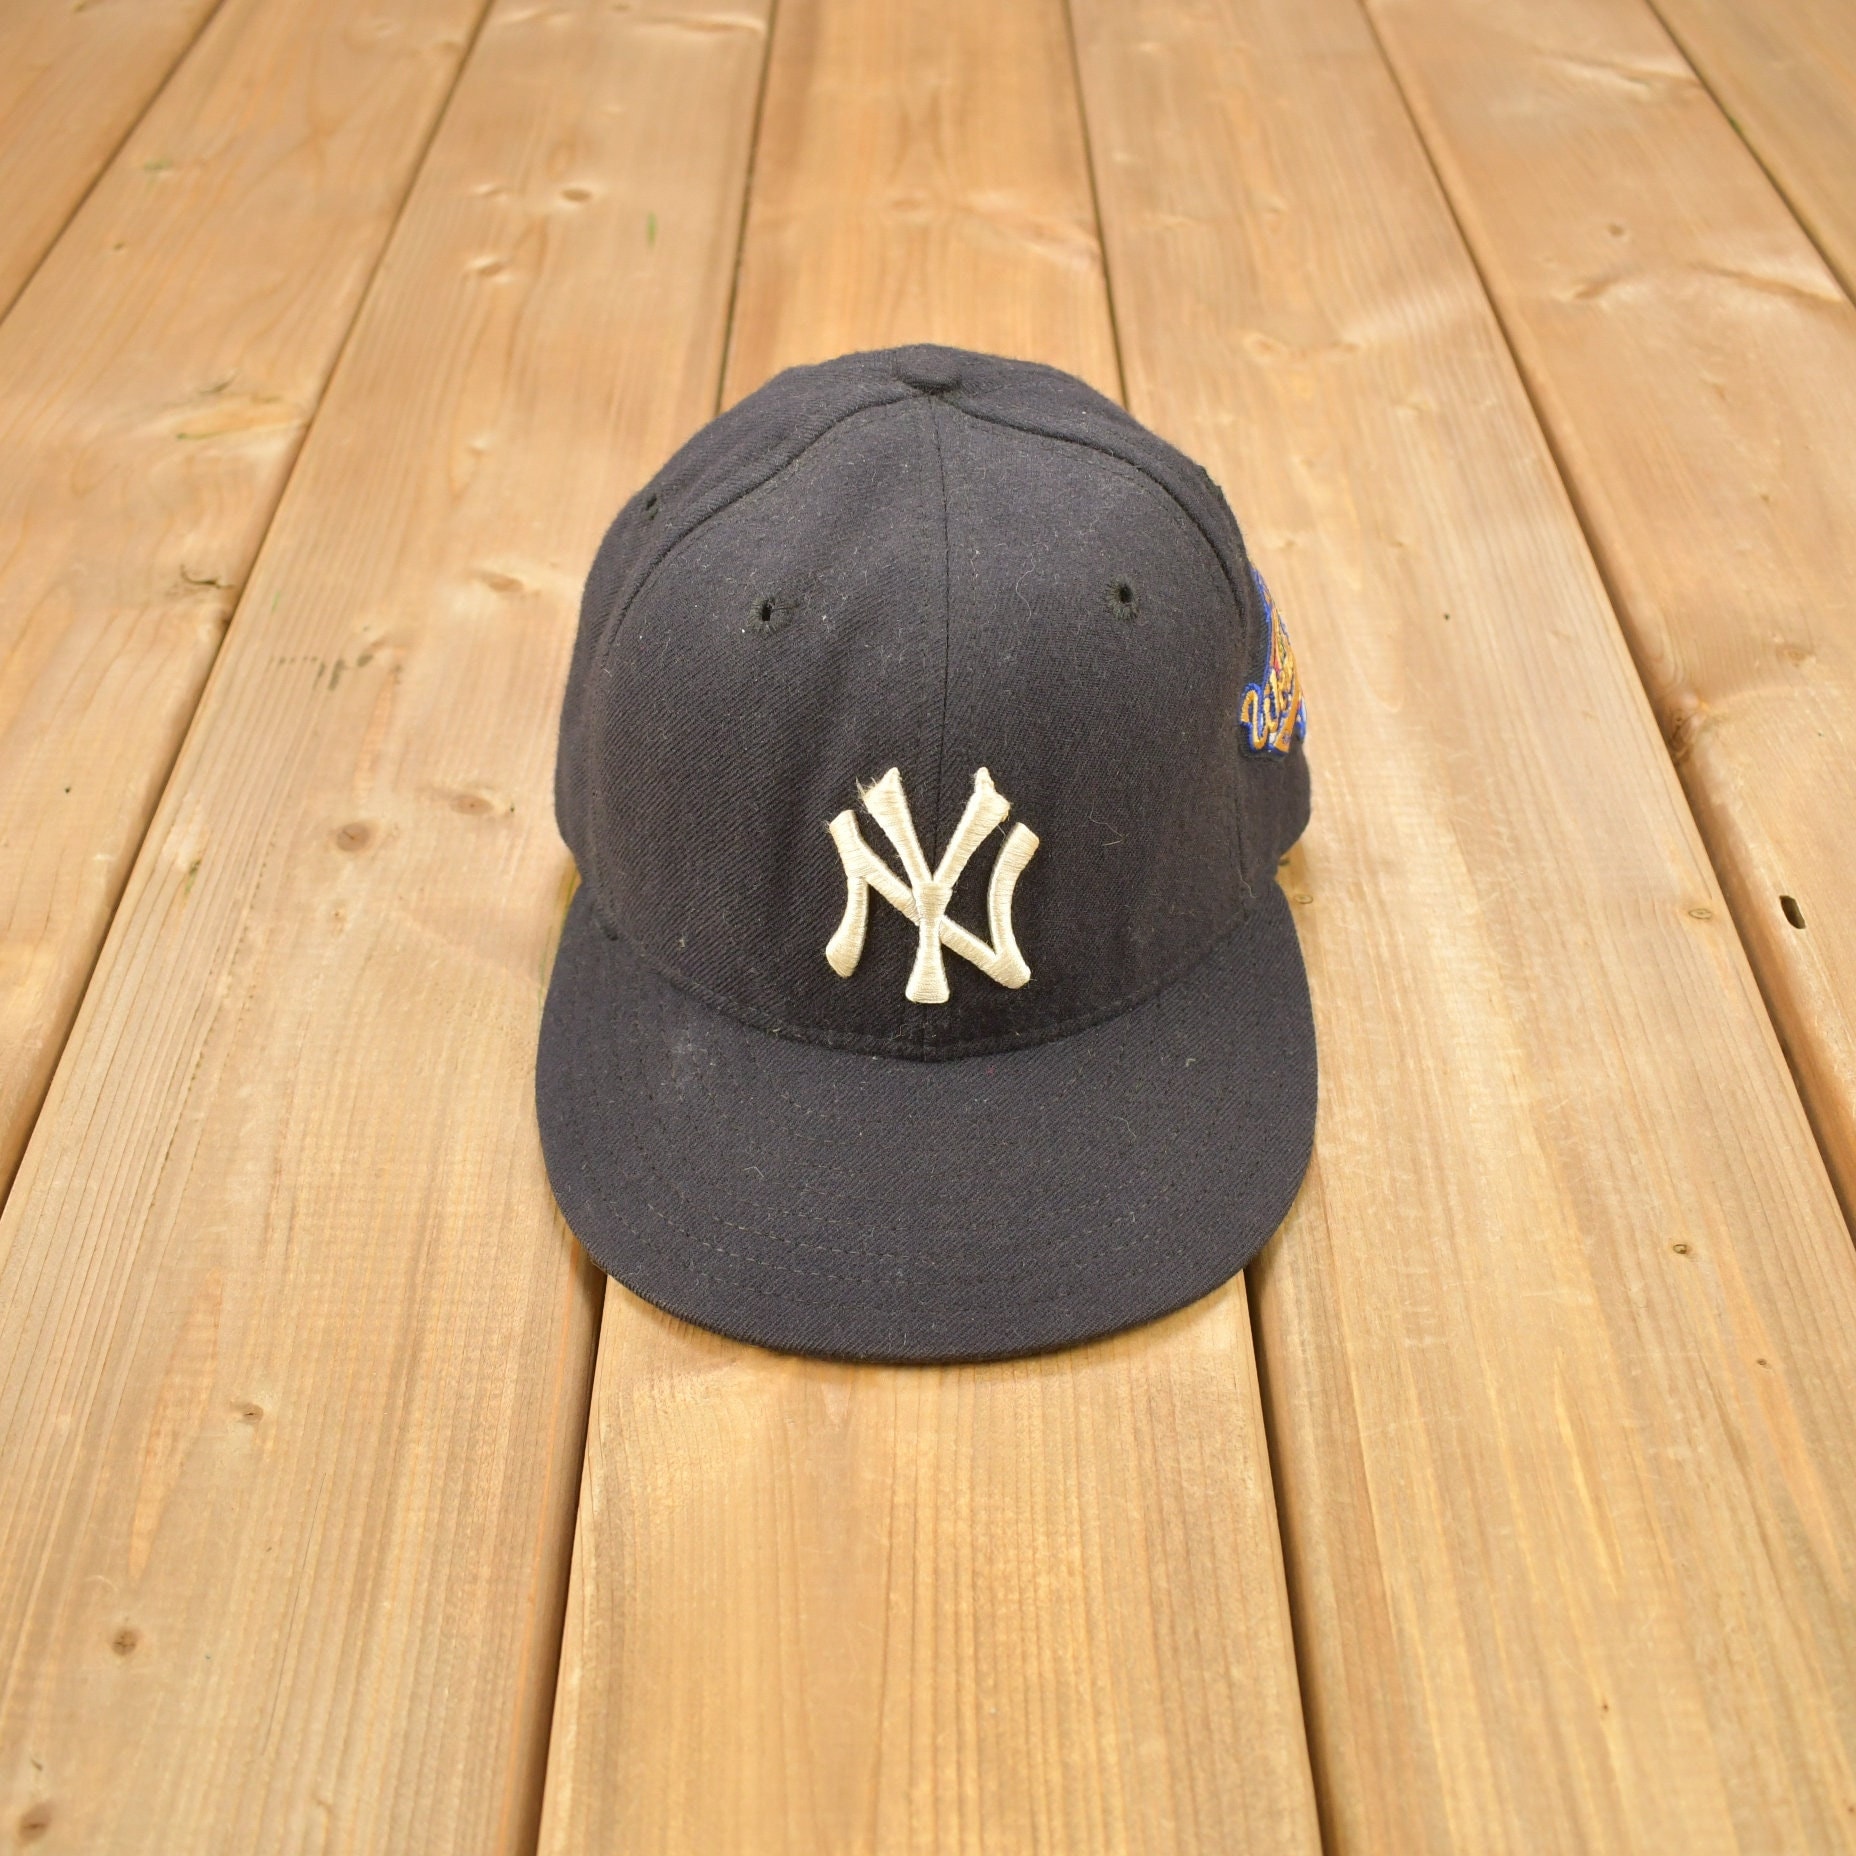 Vintage 1996 New York Yankees Era 59/50 Wolle Fitted Hat Größe 6 7/8/World Series Bestickt Made in Usa von Lostboysvintage